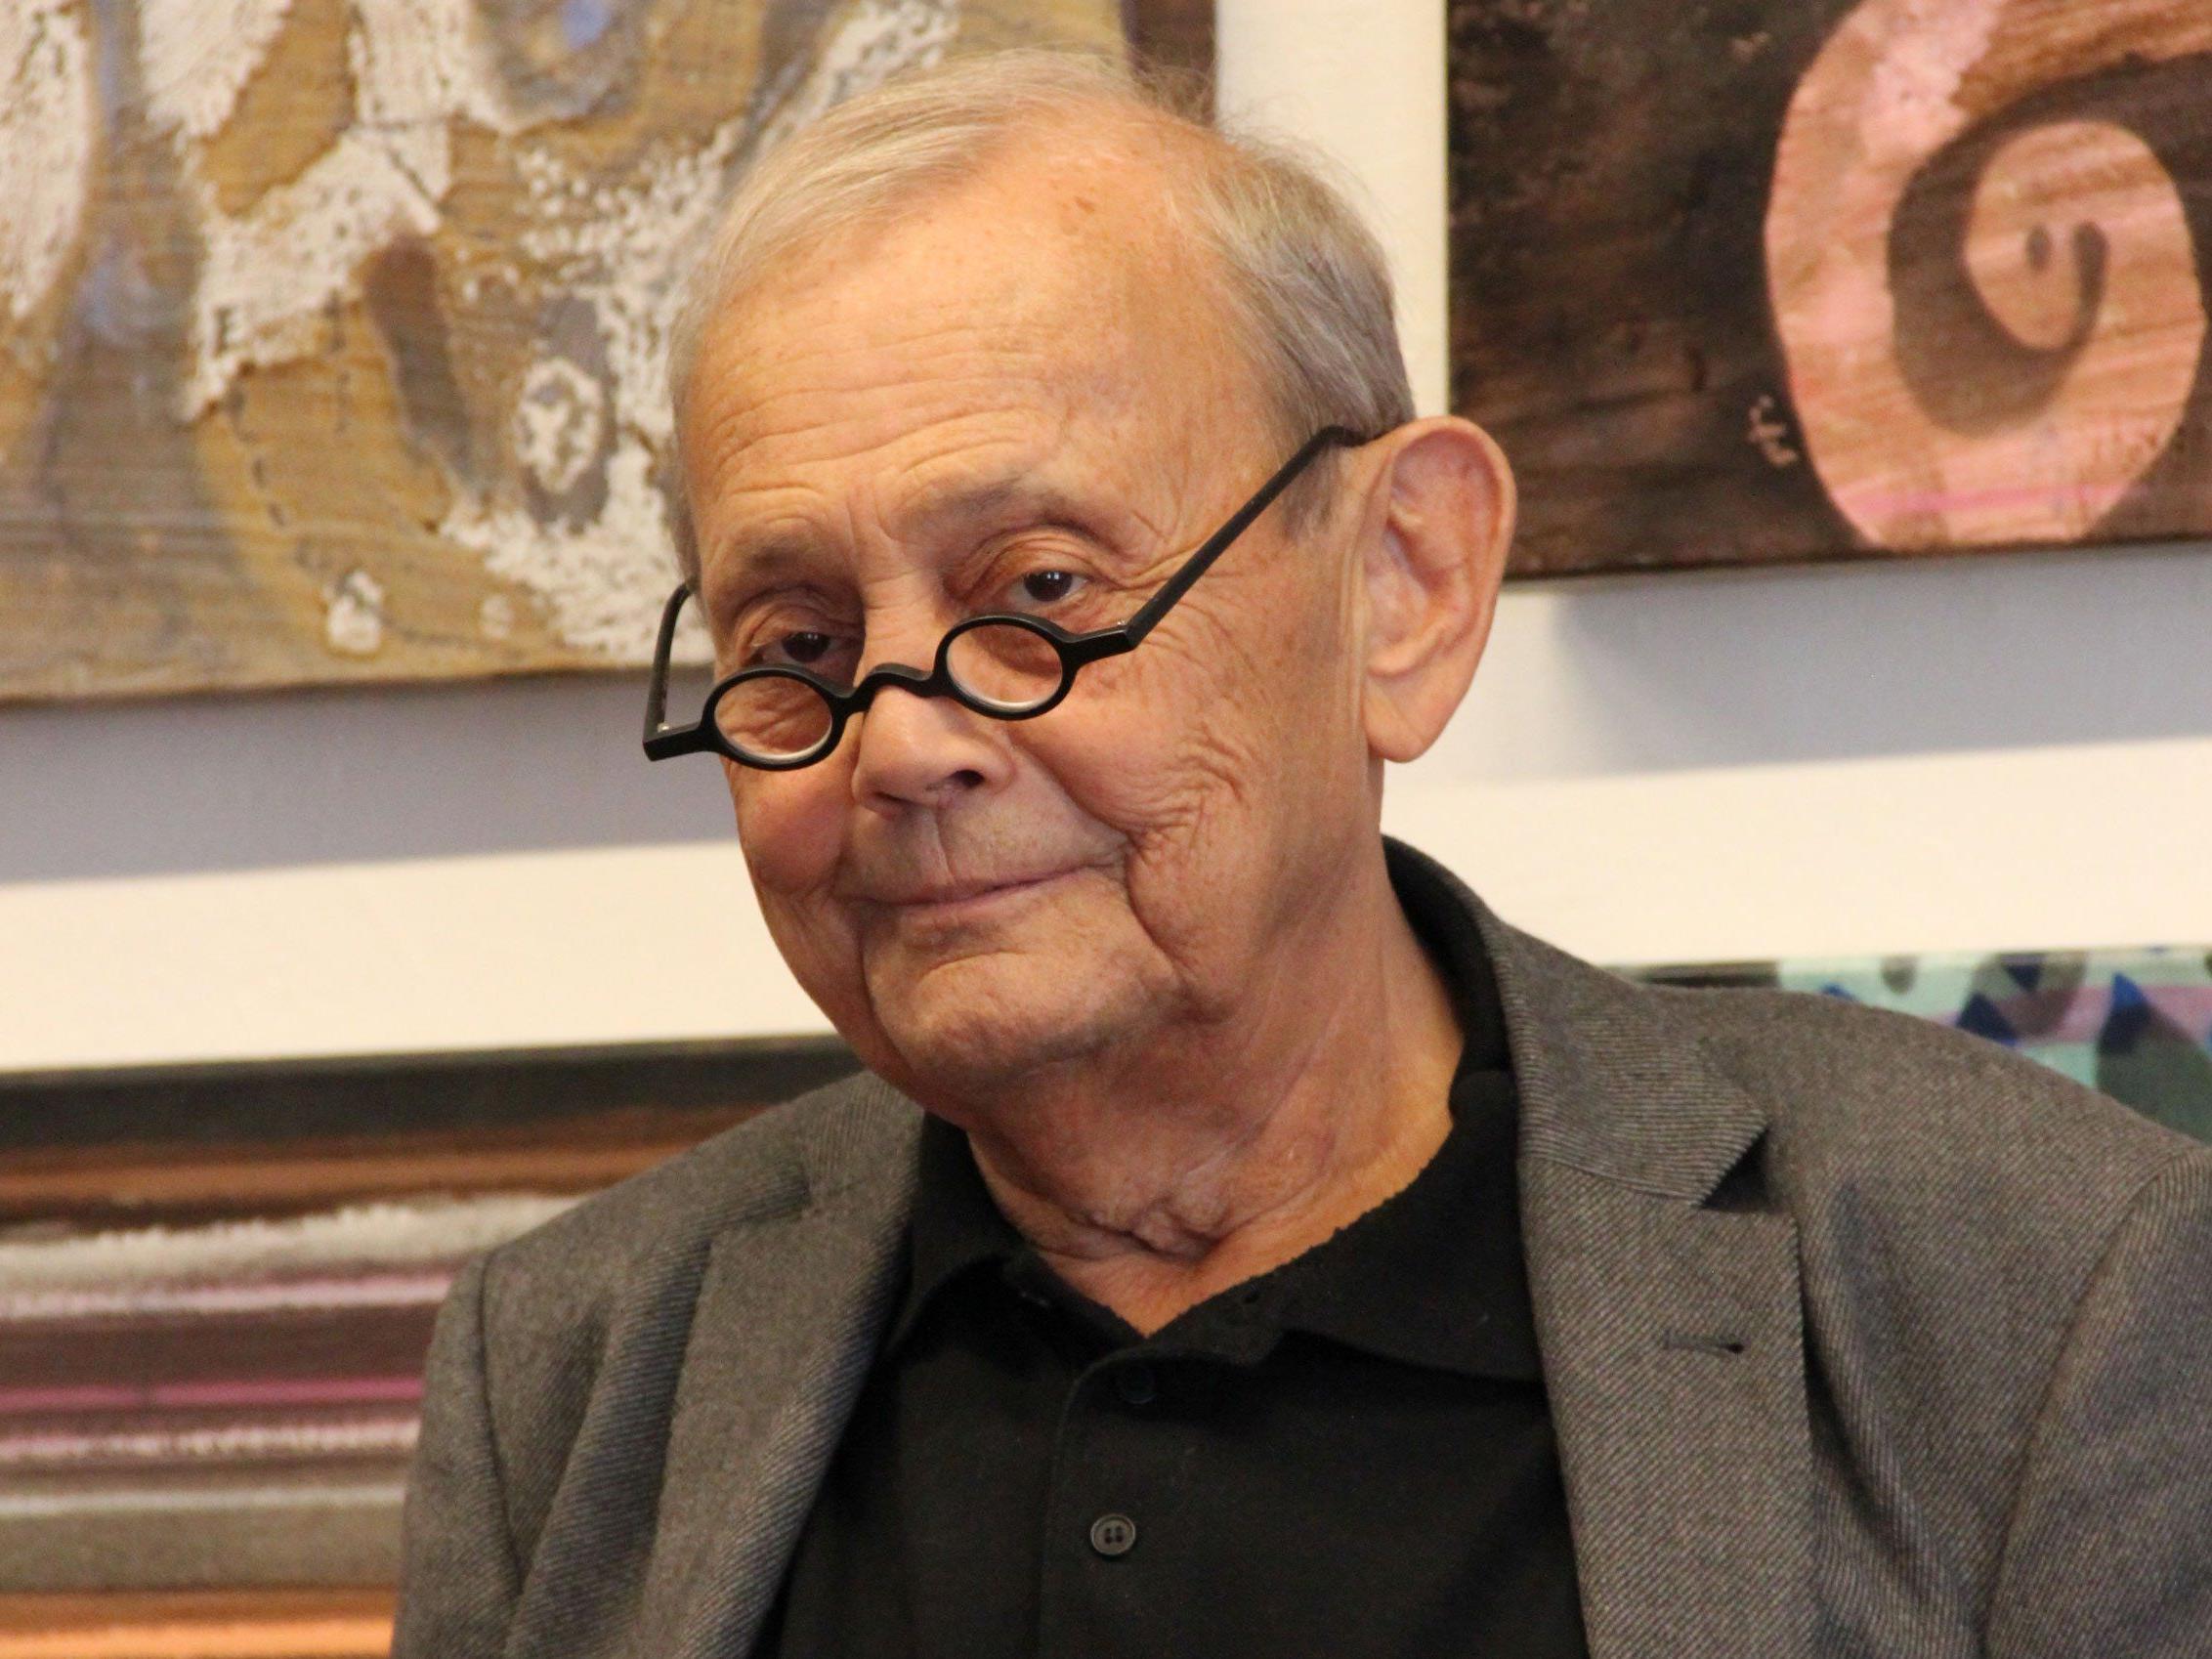 Vorarlberger Künstler und Jurist Gerold Hirn im Alter von 70 Jahren verstorben.